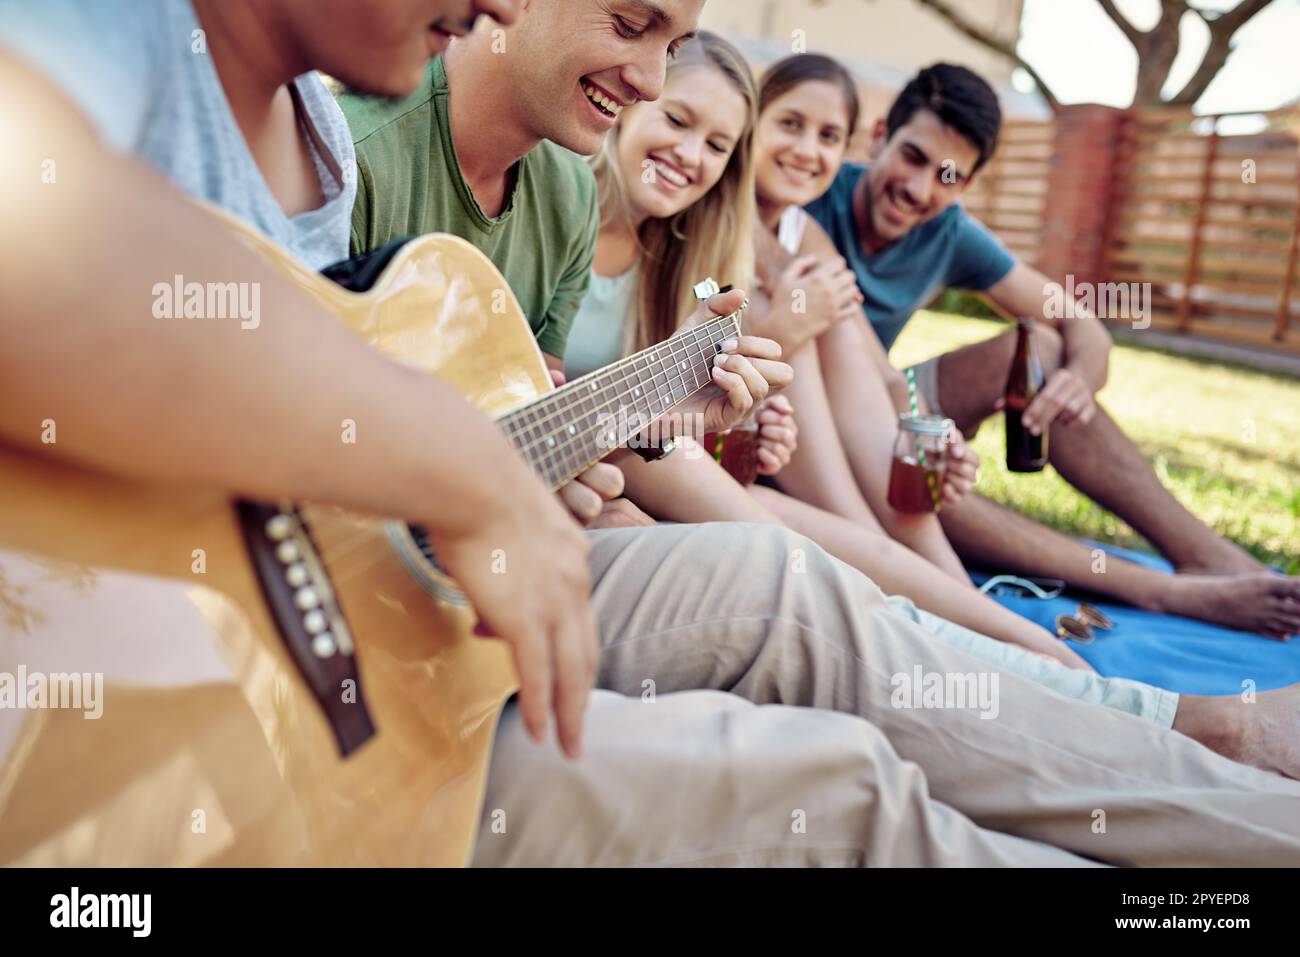 Riproduzione di una canzone. un giovane che suona la chitarra mentre sorsegga qualche drink con i suoi amici fuori nel sole estivo. Foto Stock